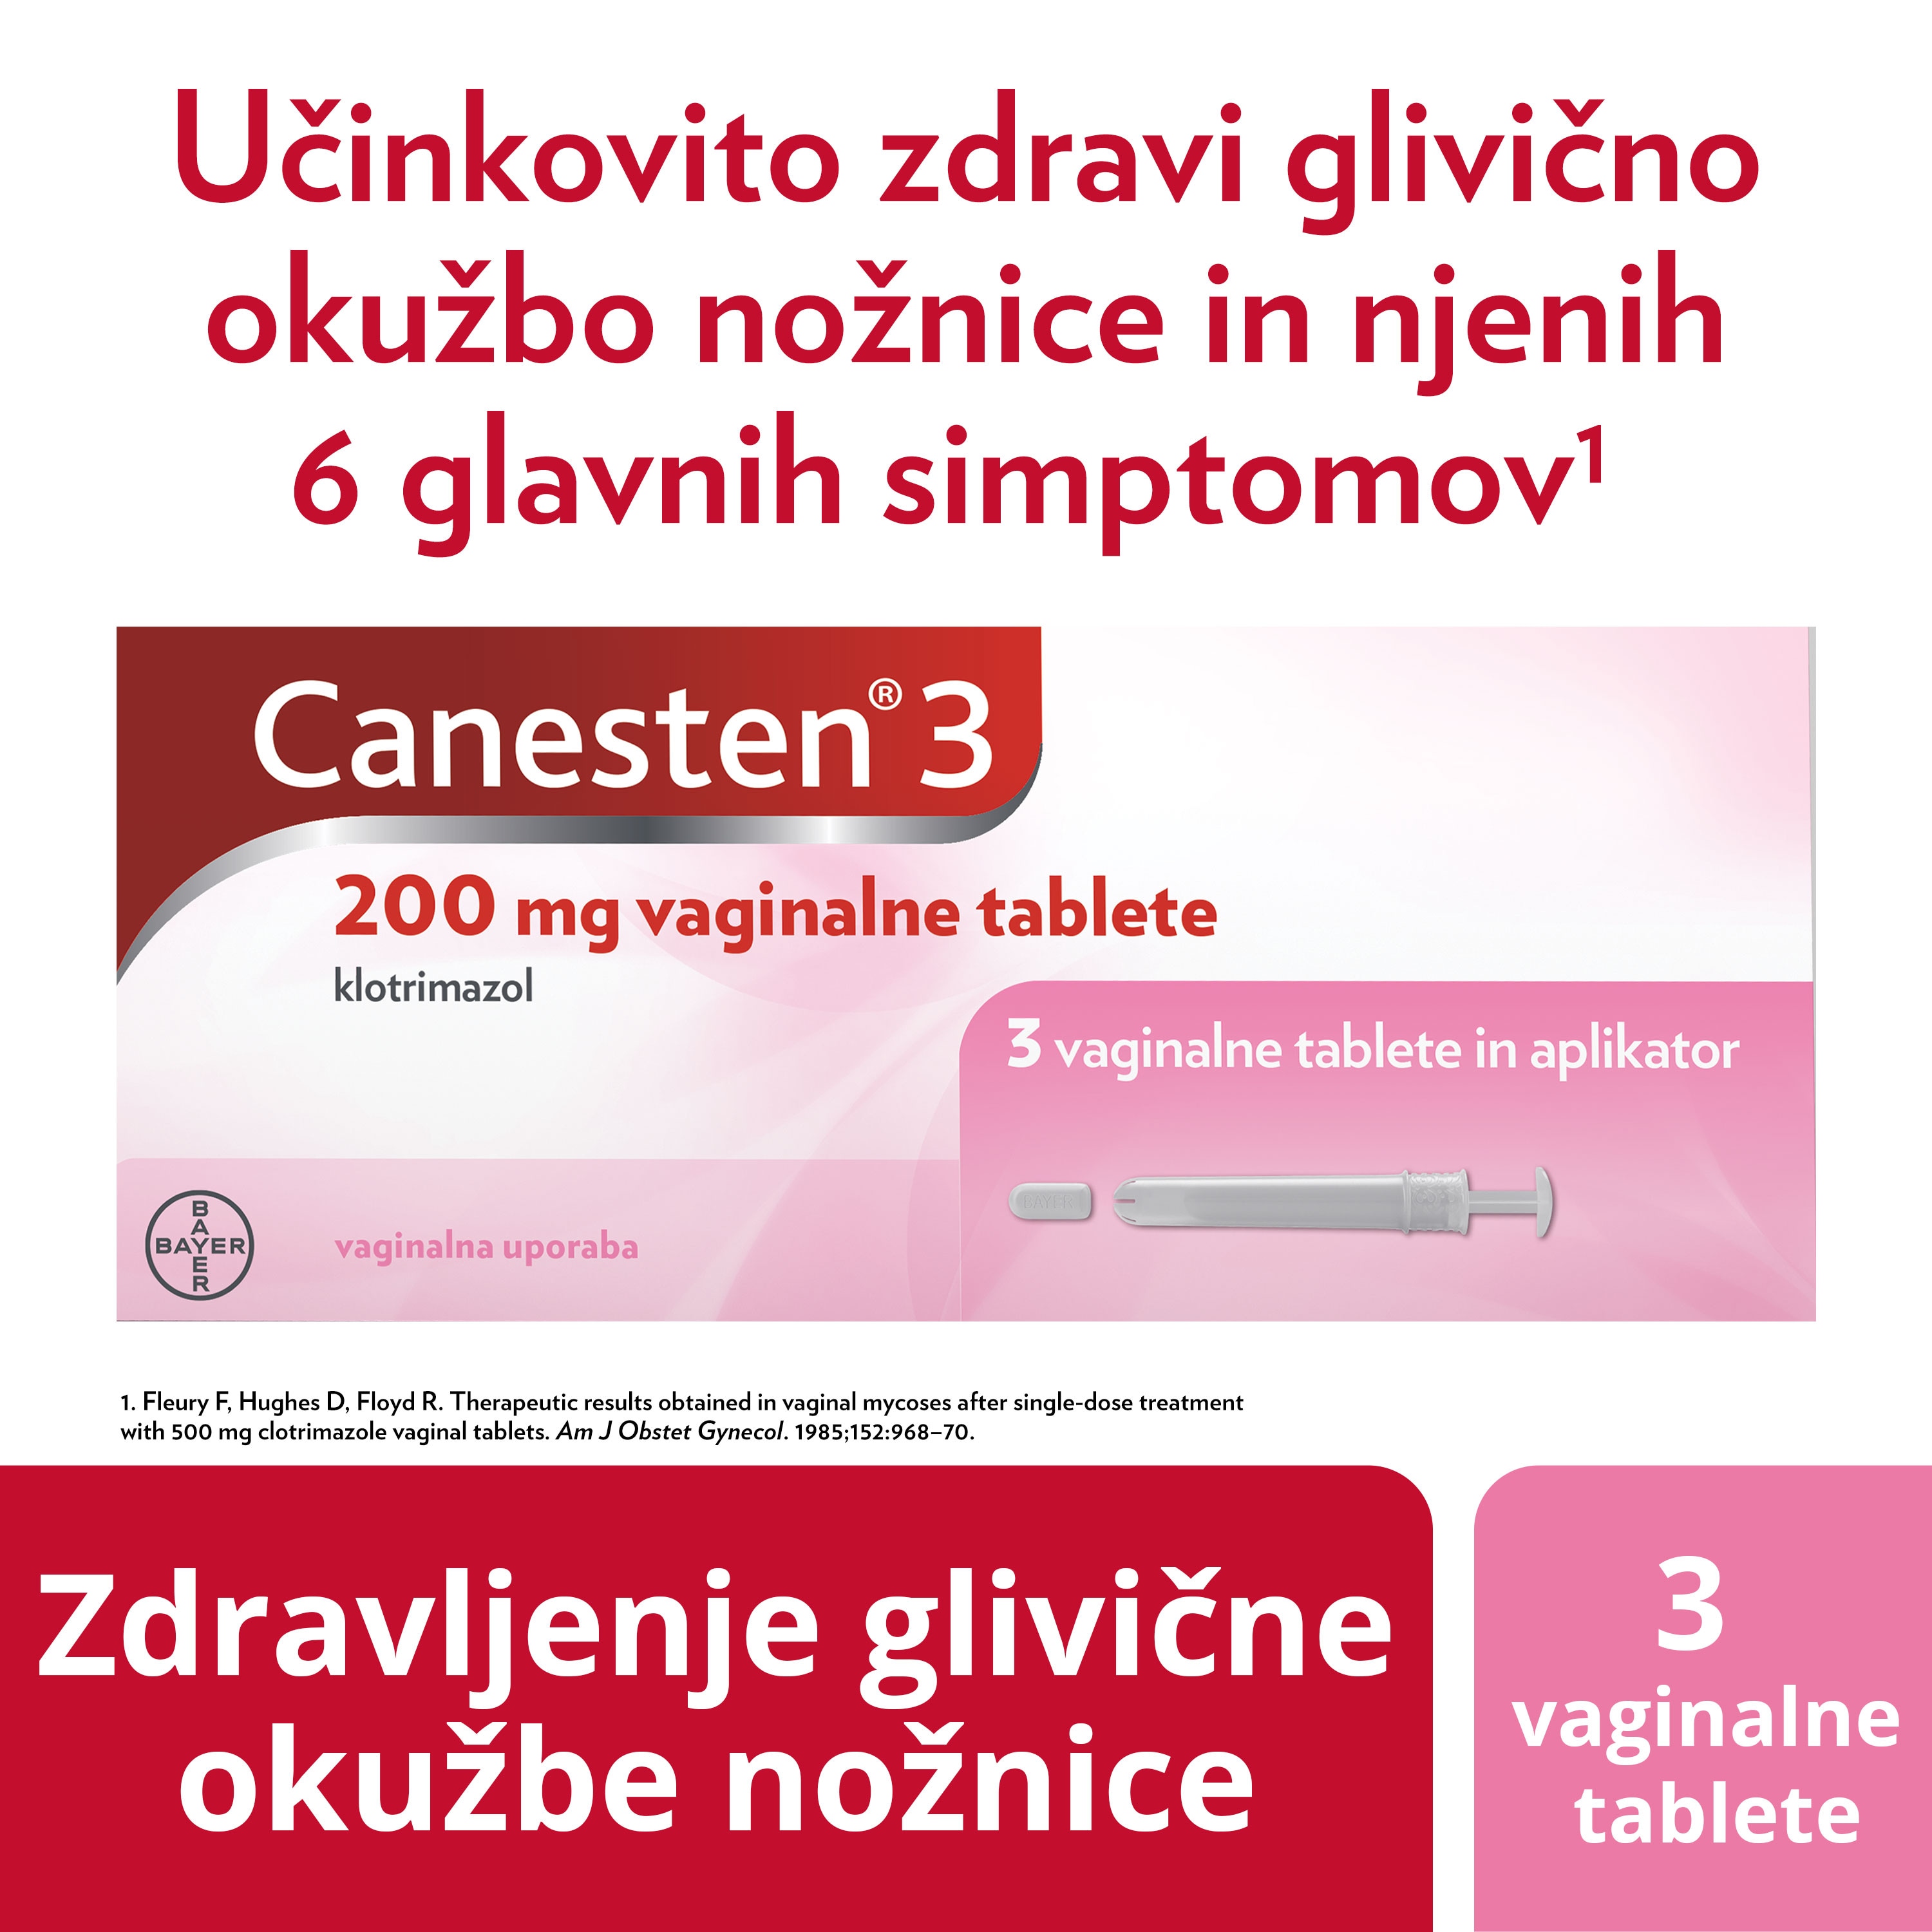 Zdravljenje glivične okužbe nožnice 3 vaginalne tablete